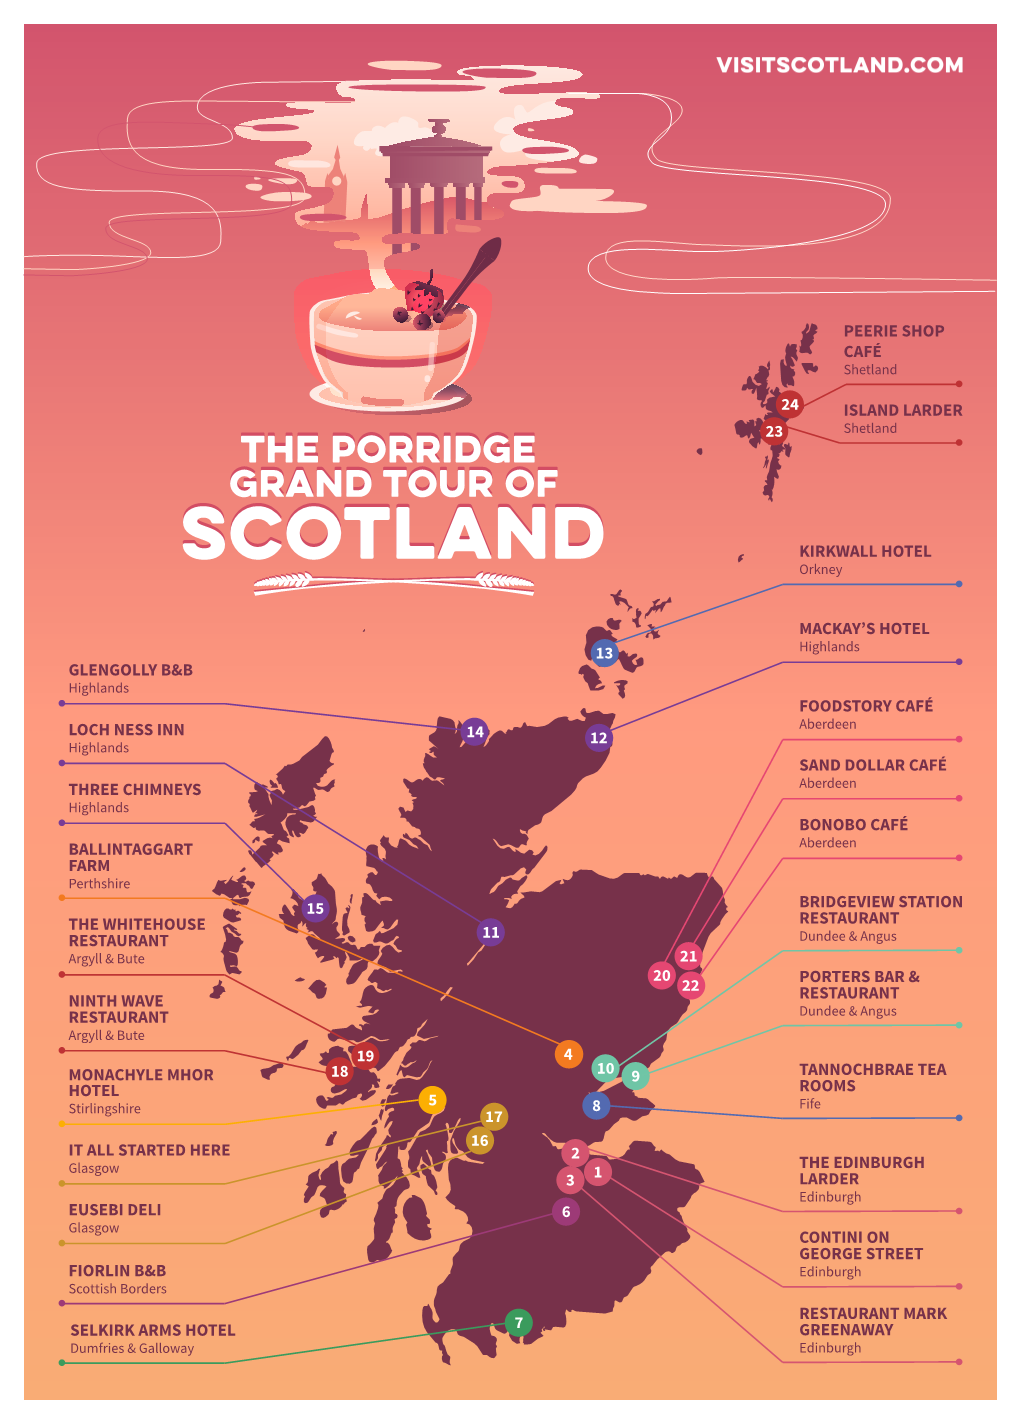 The Porridge Grand Tour of Scotland